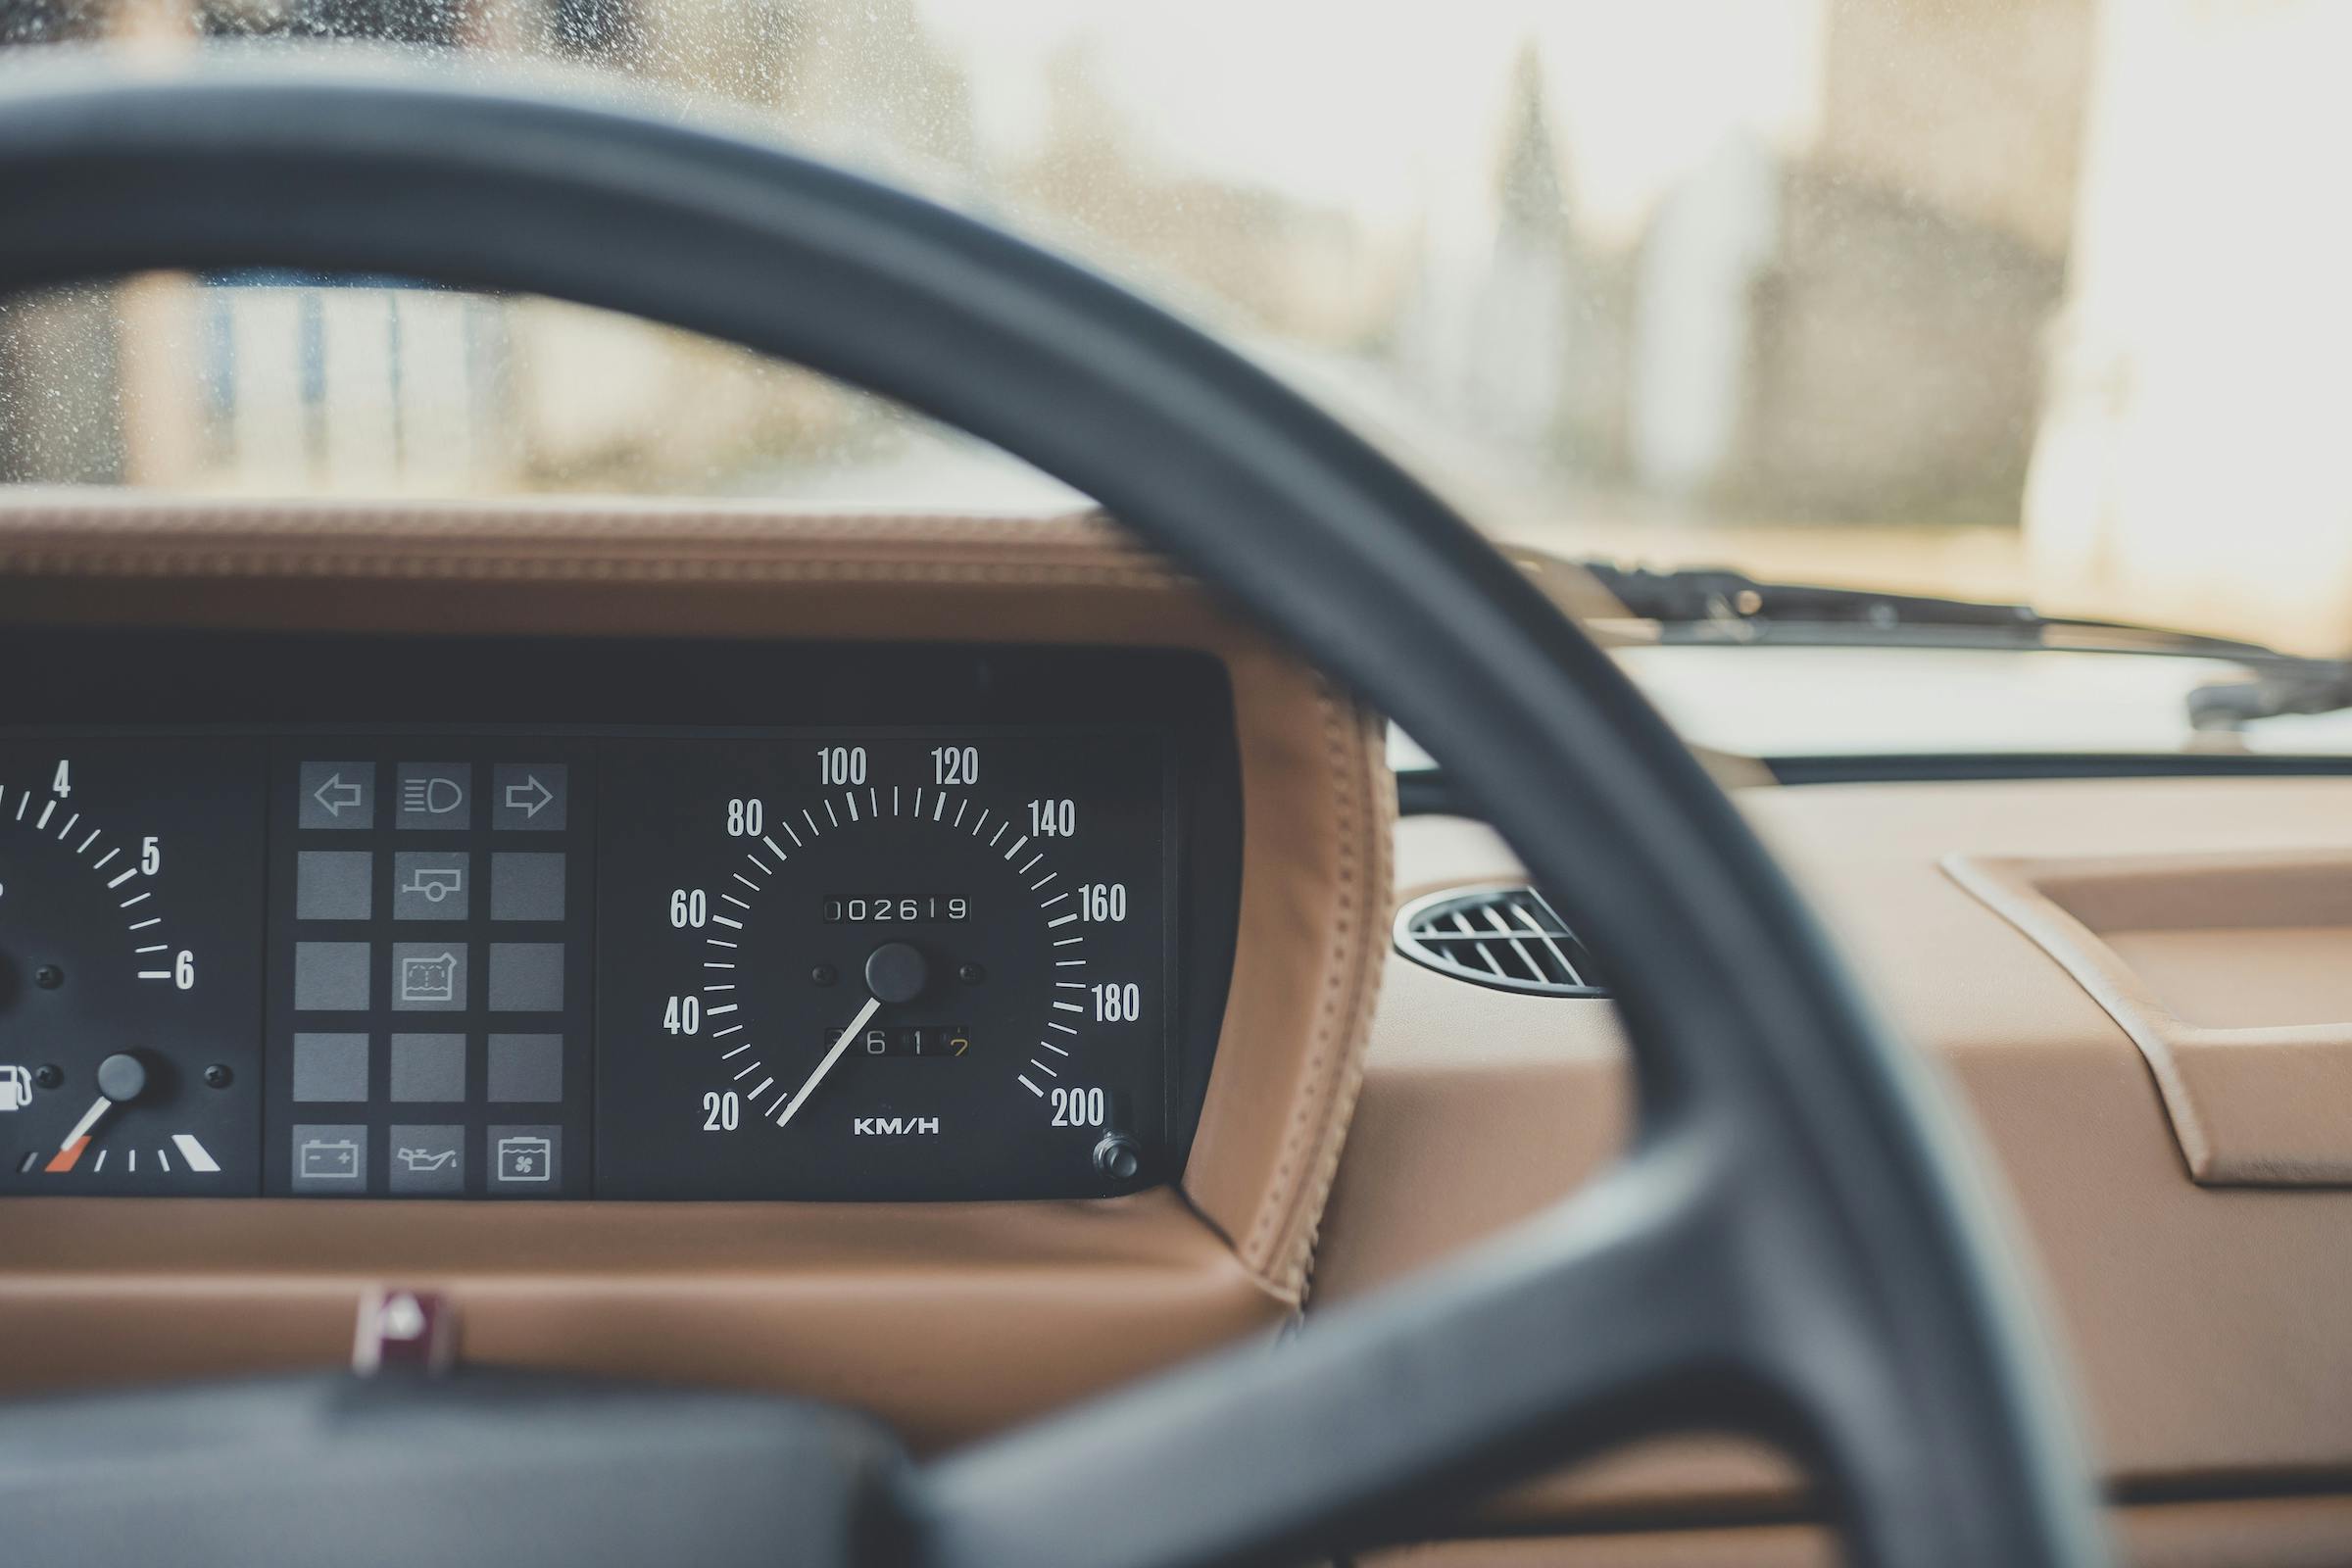 Range Rover Restomod interior dash gauges